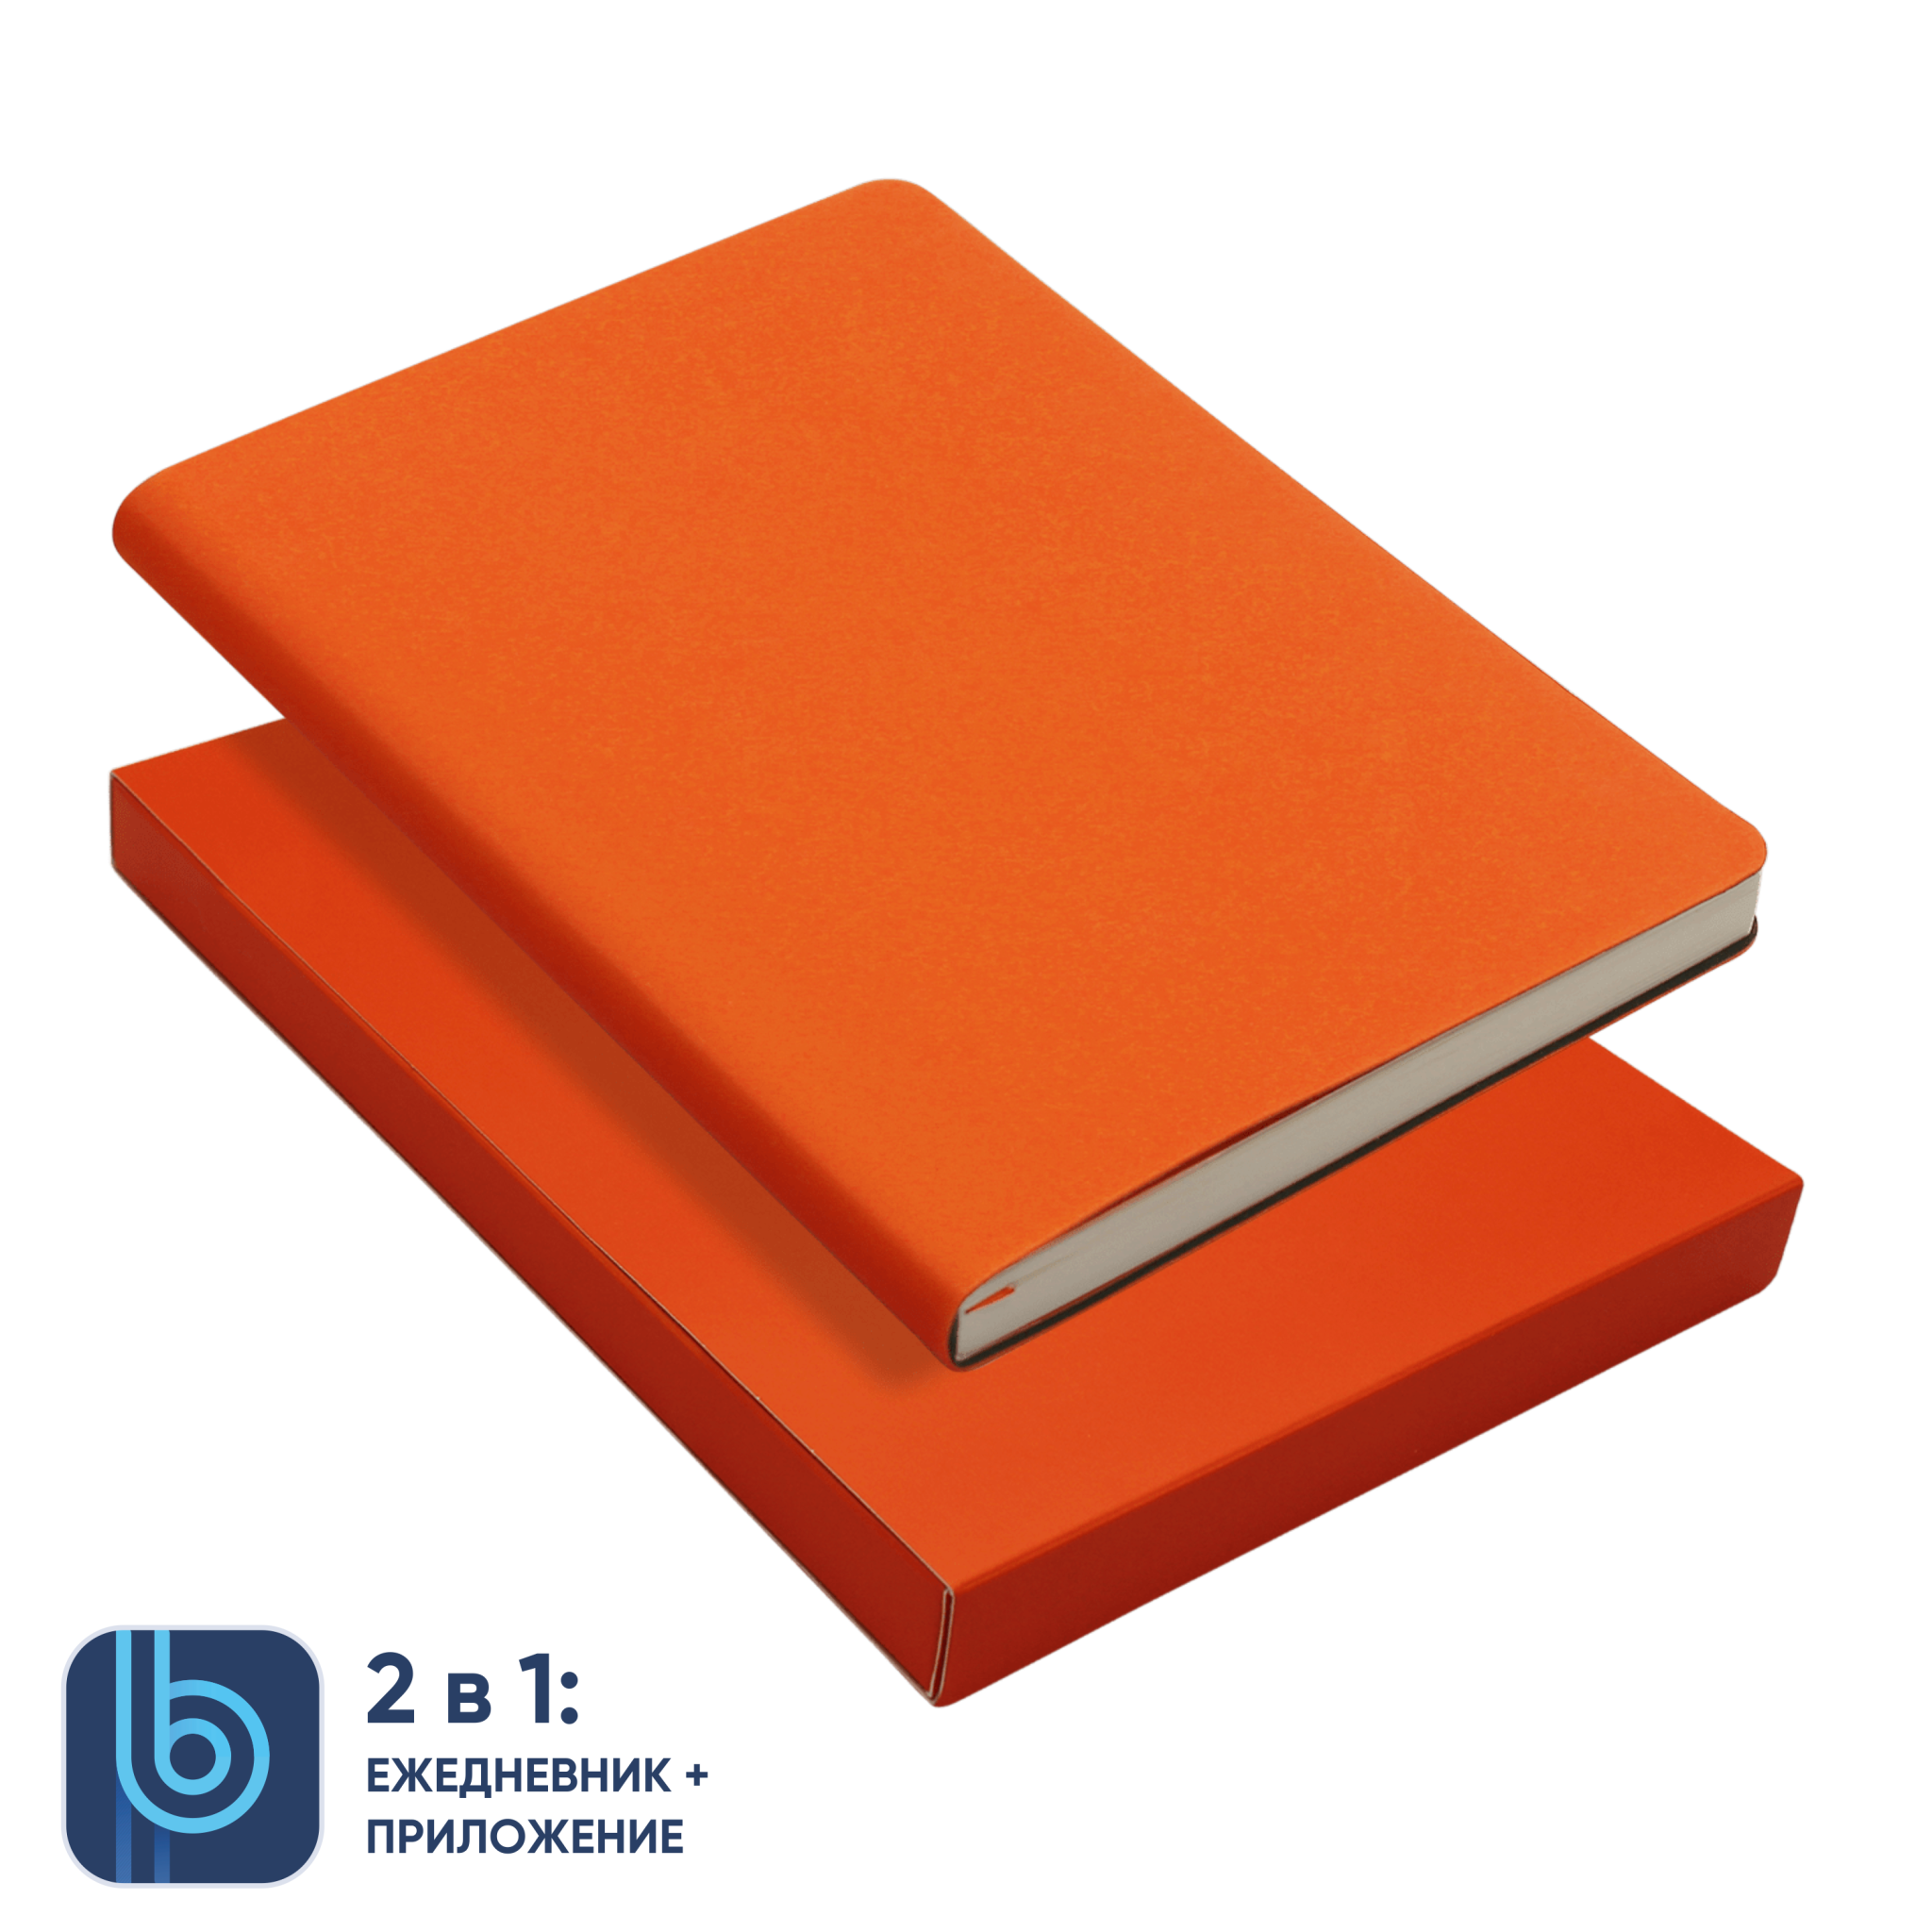 Ежедневник Bplanner.01 в подарочной коробке (оранжевый), оранжевый, картон